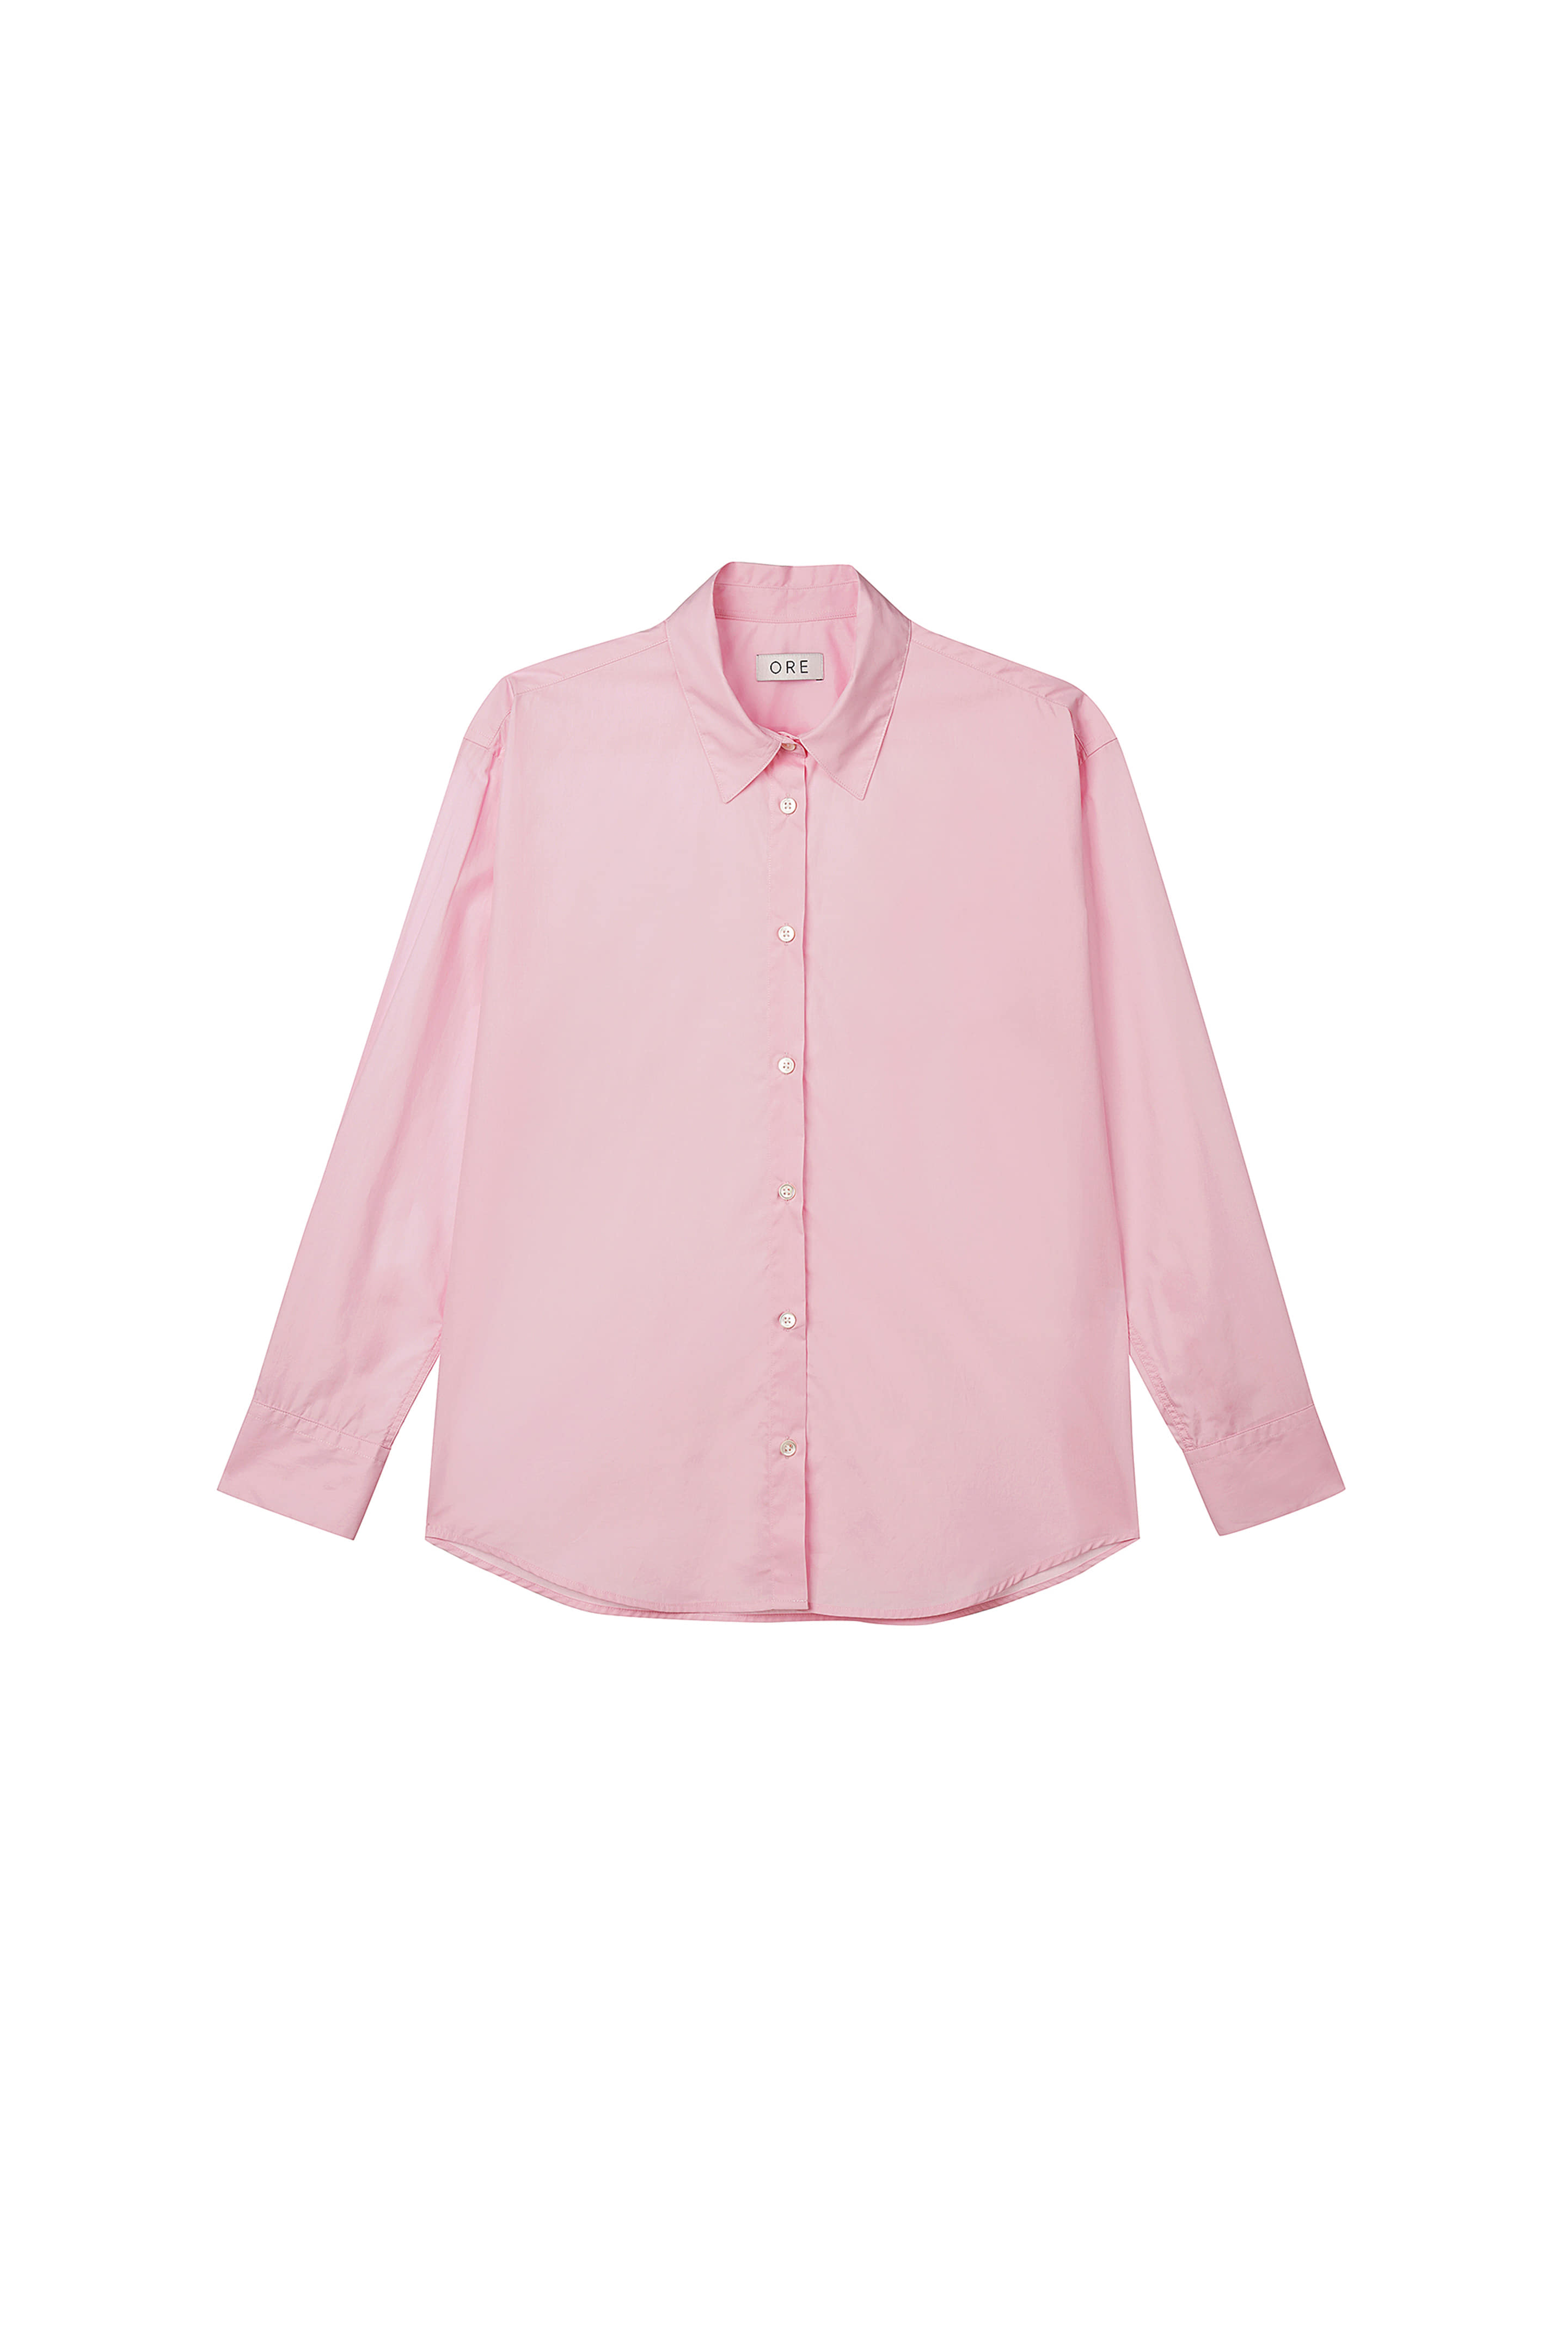 Shirts 80’ Cotton Soft Candy Pink